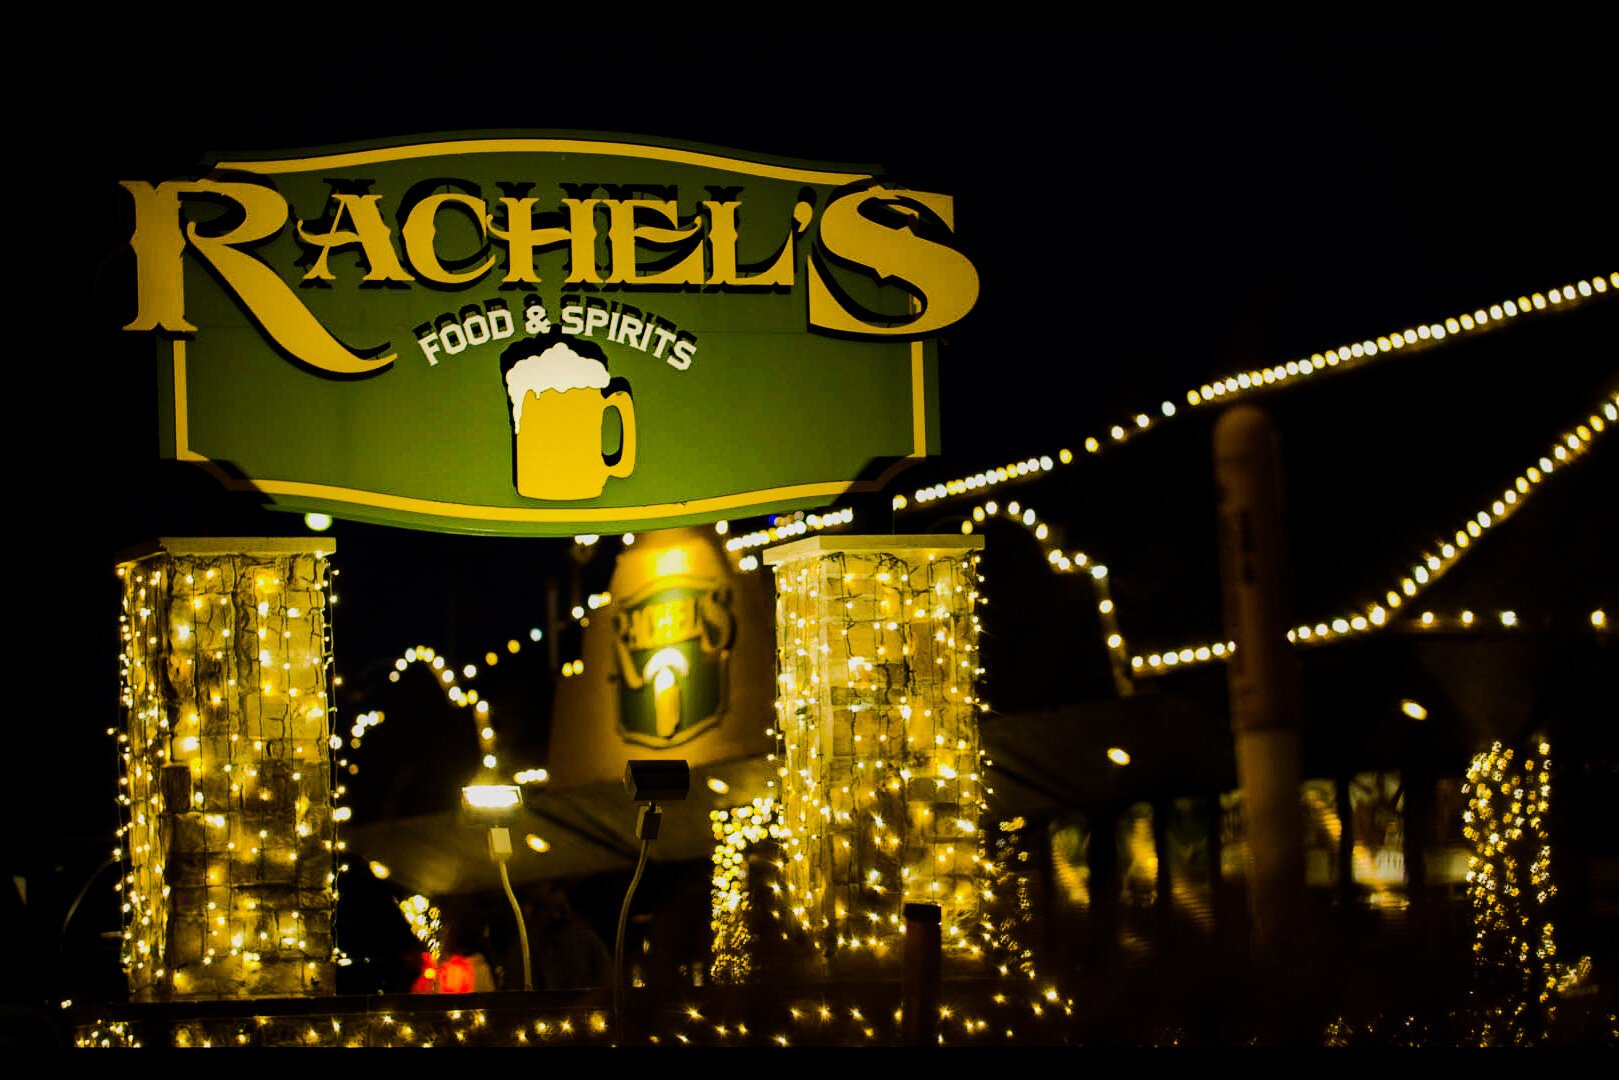 Siev's parents' restaurant, Rachel's, in Bad Axe..